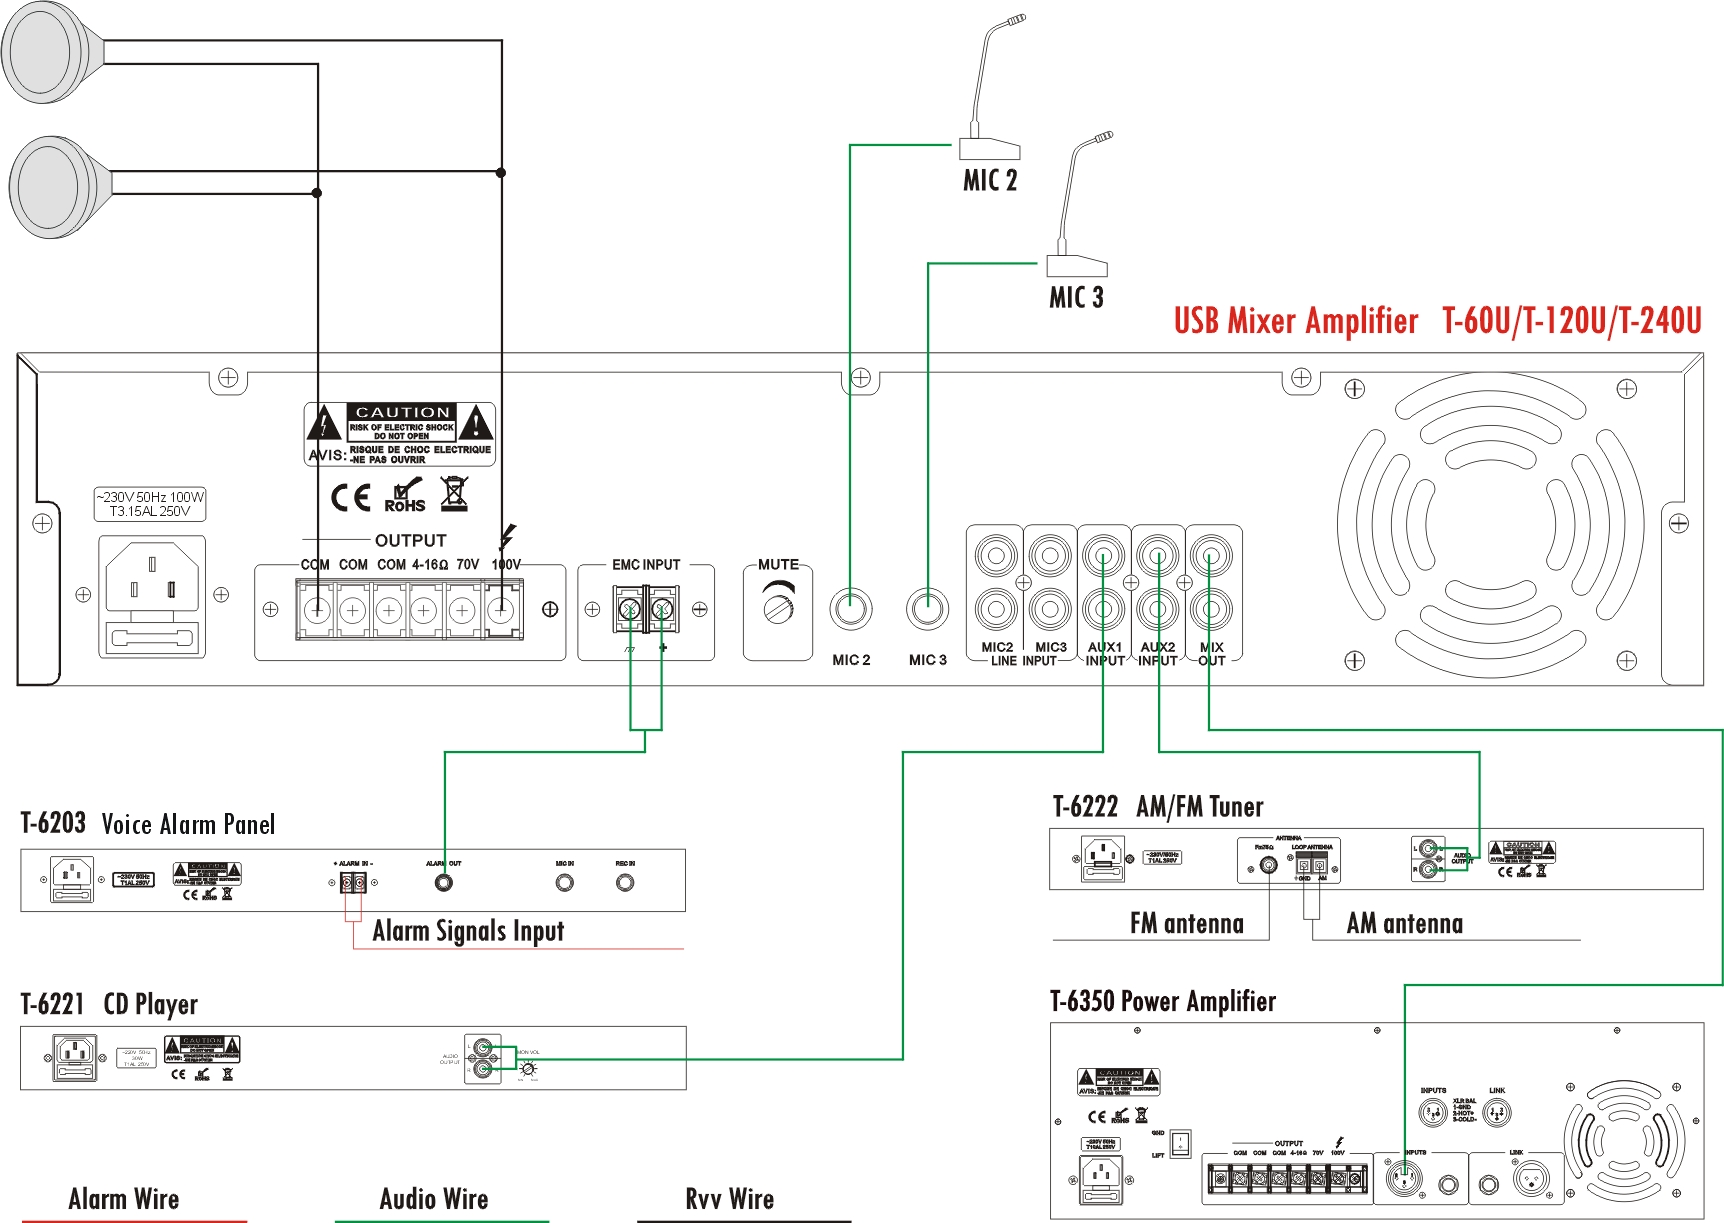 ITC T-60U T-120U T-240U USB Mixer Amplifier